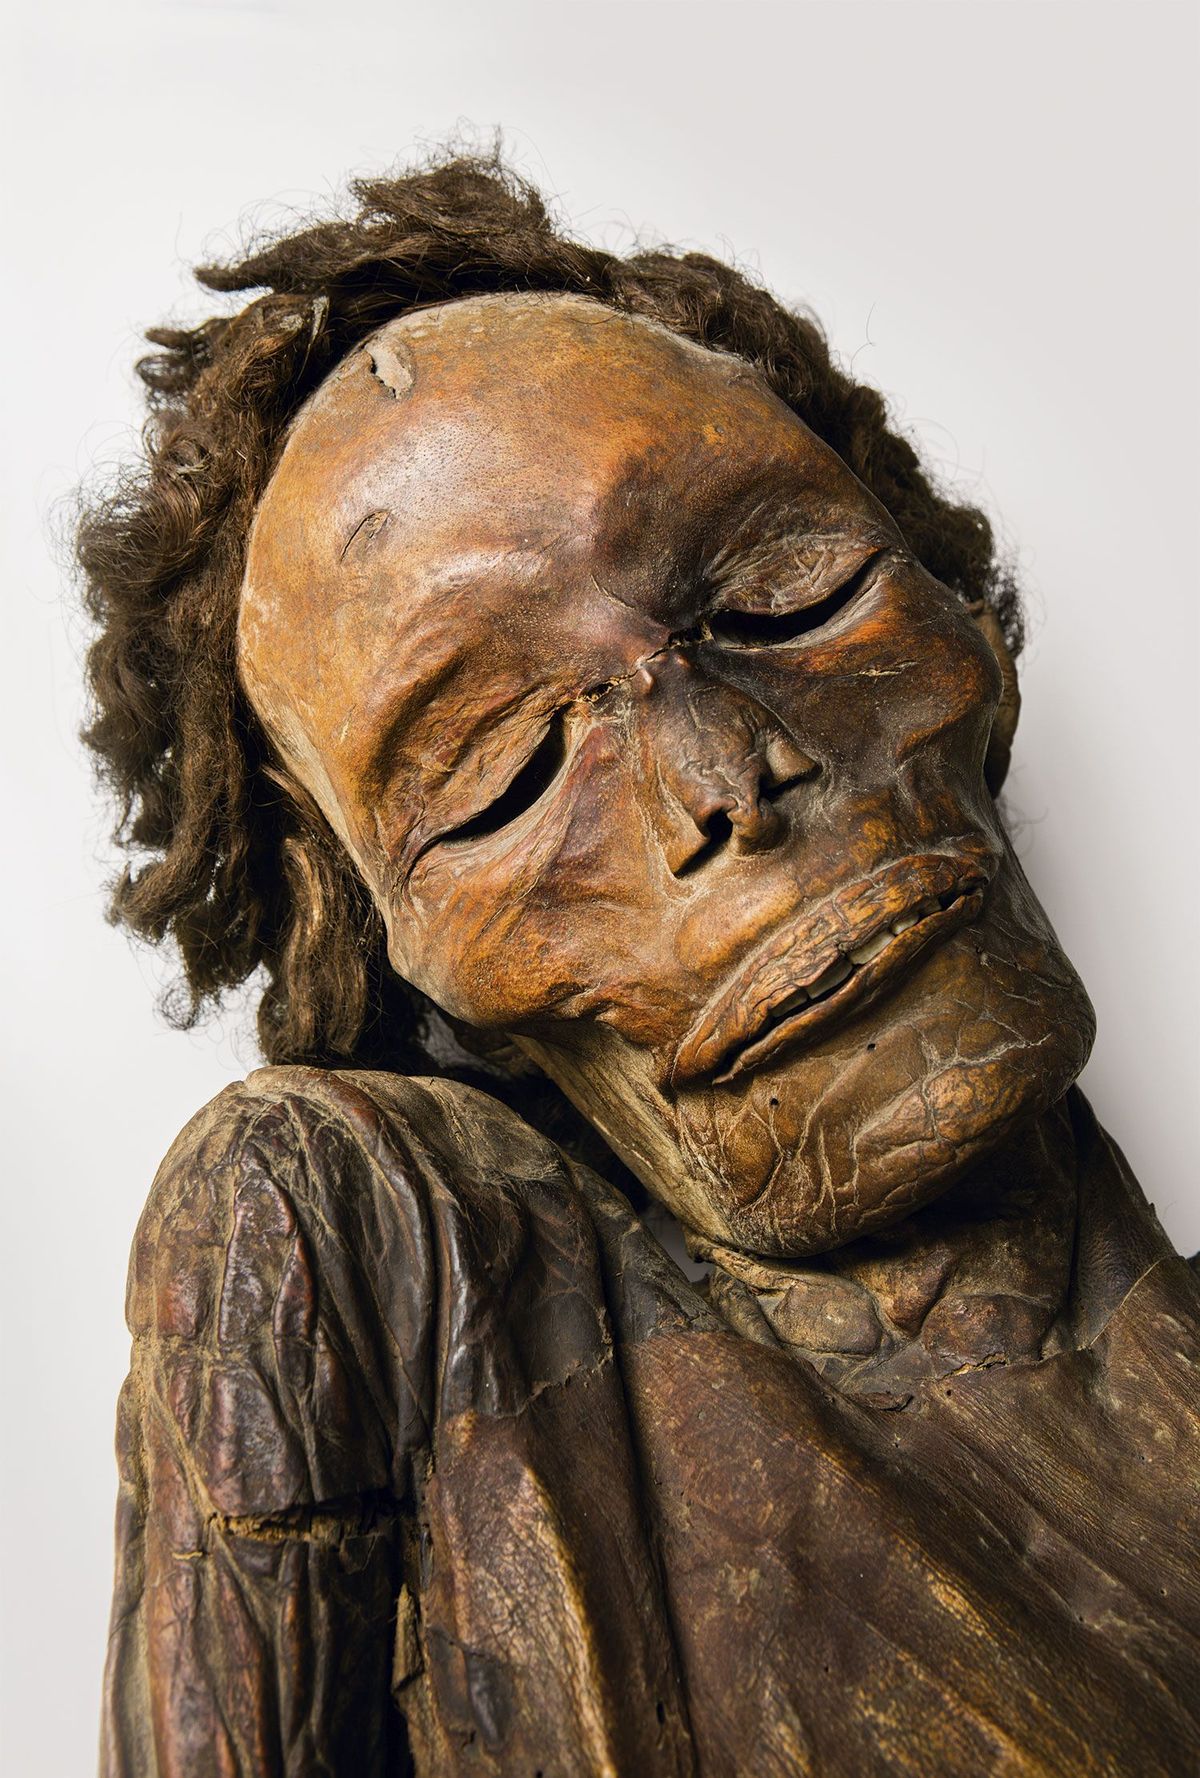 Deze mummie lag ooit in een grot op Tenerife waarvan de exacte locatie in de vergetelheid is geraakt al denken onderzoekers nu mogelijk de ligging van het graf te hebben achterhaald